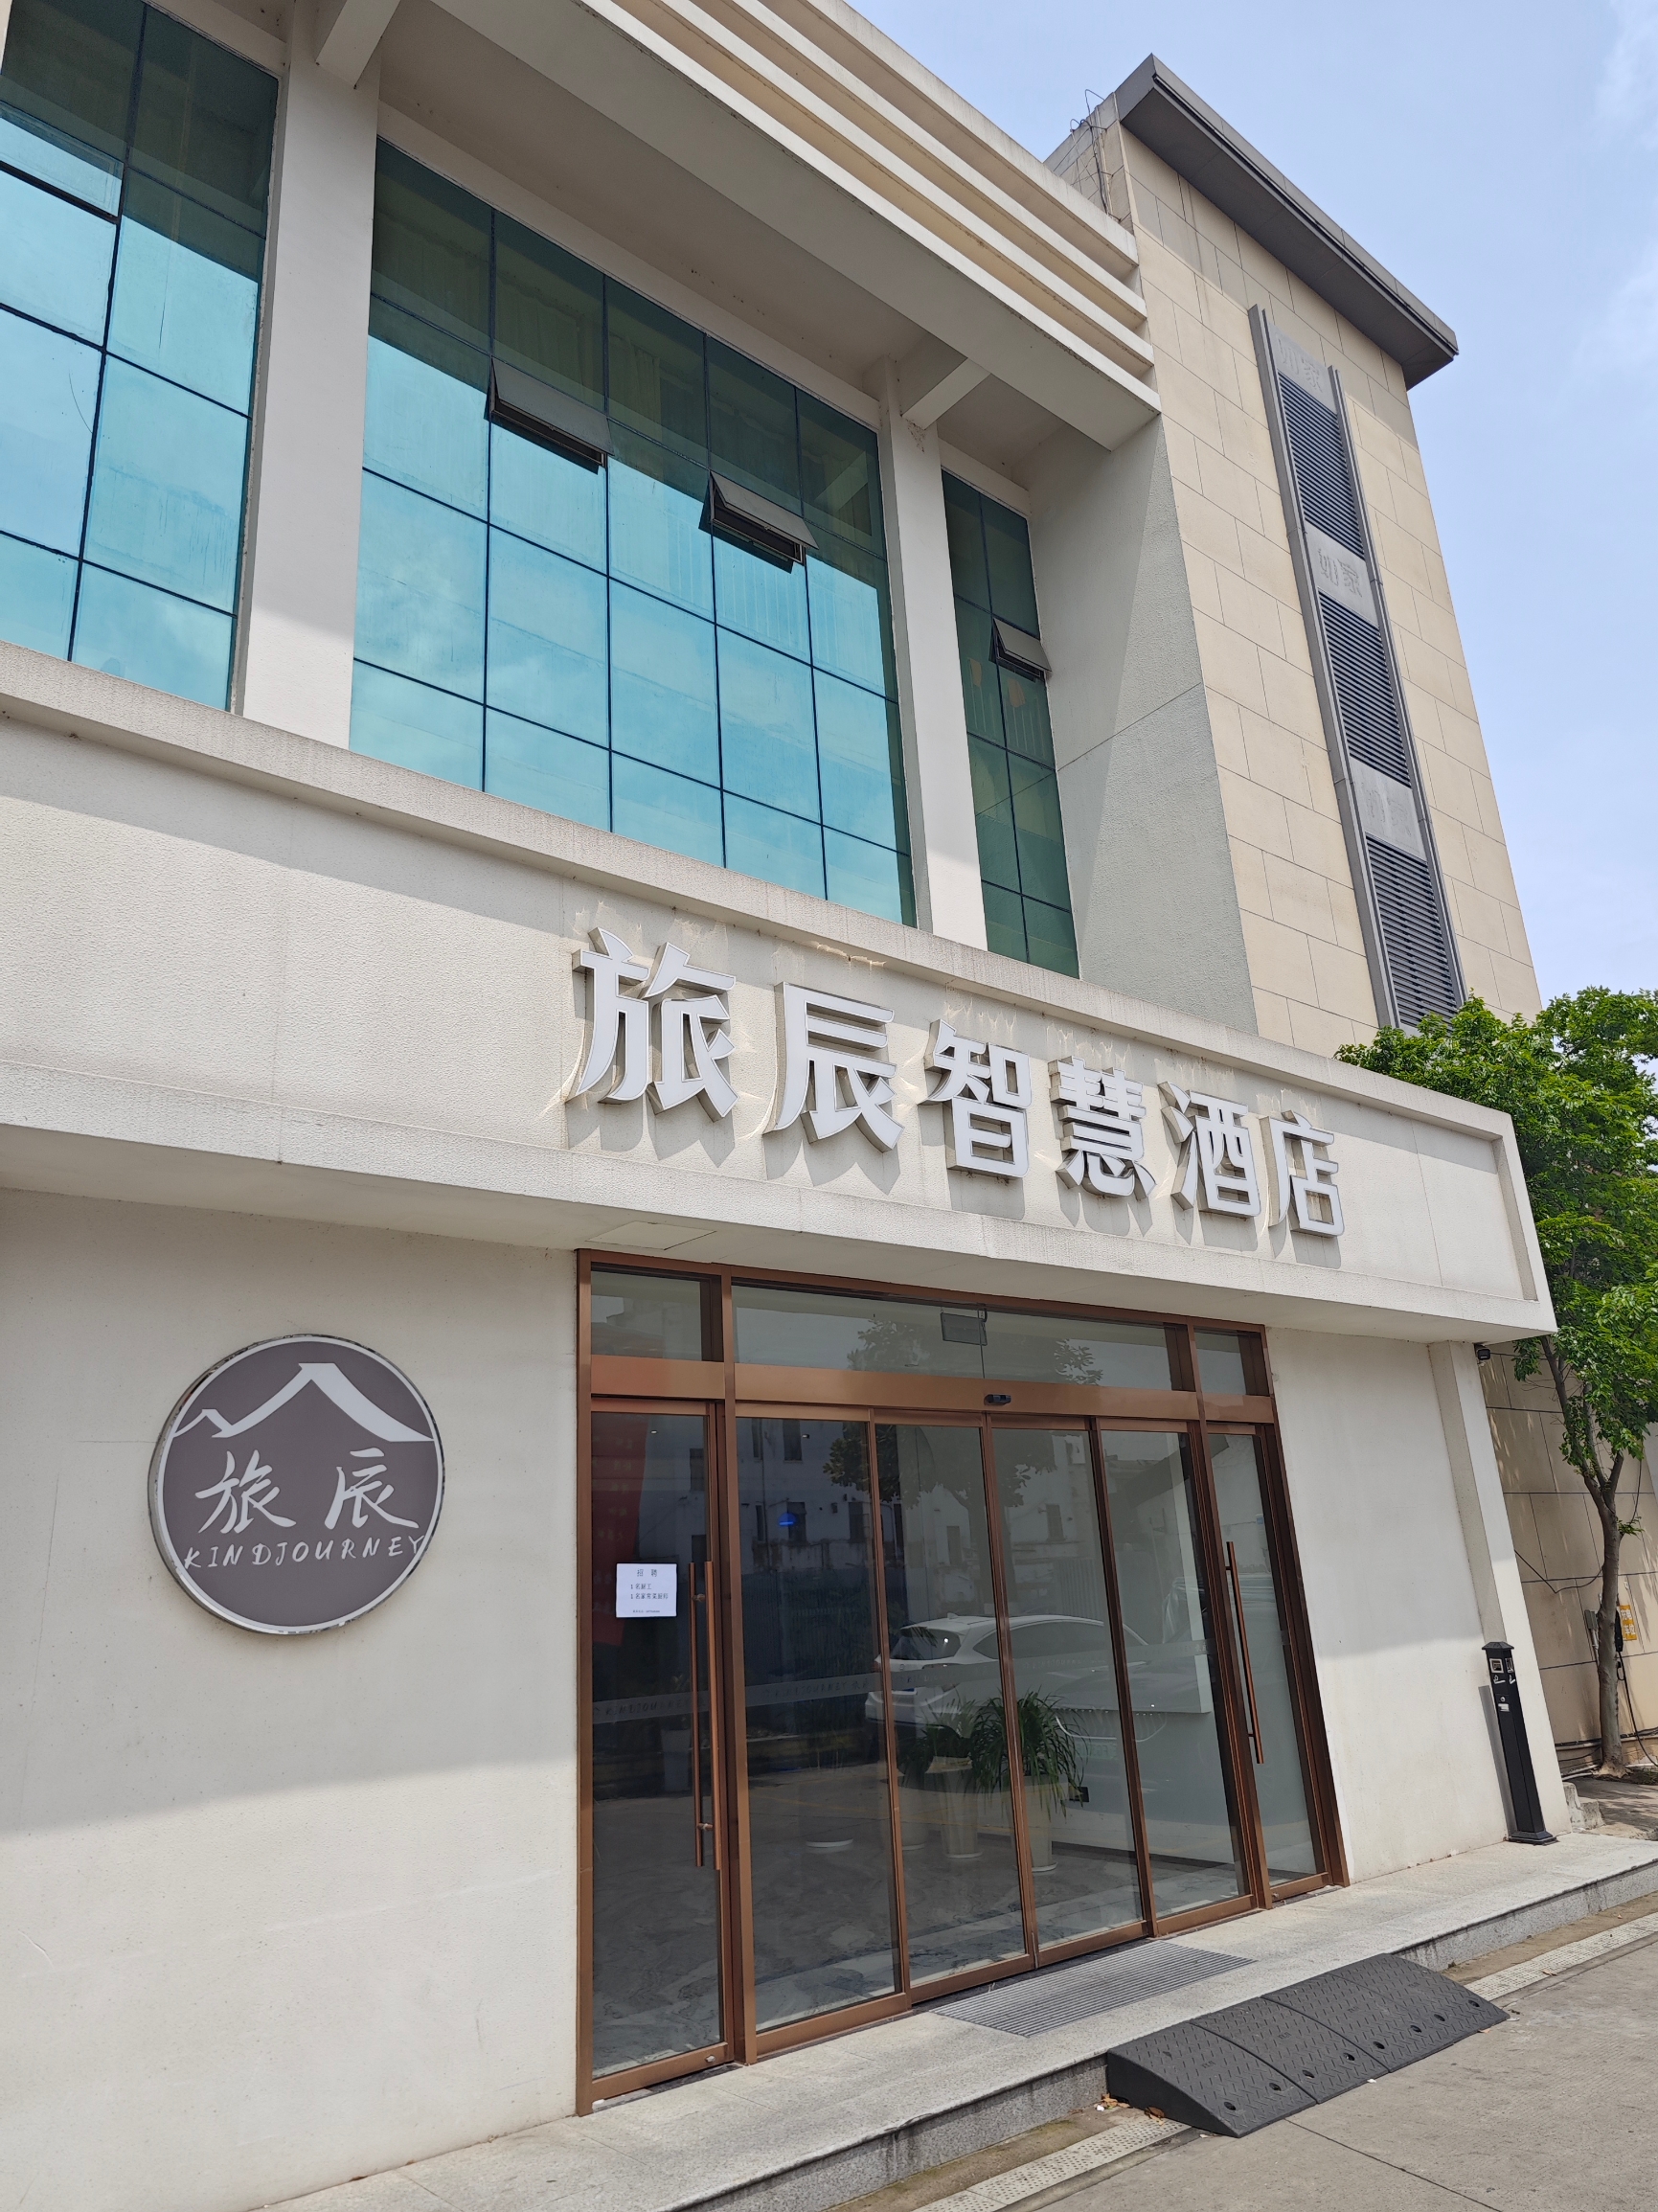 这家酒店位于昆山张浦镇，基本属于镇中心的位置，周围非常热闹，尤其是吃饭的地方很多，各式口味都有。  